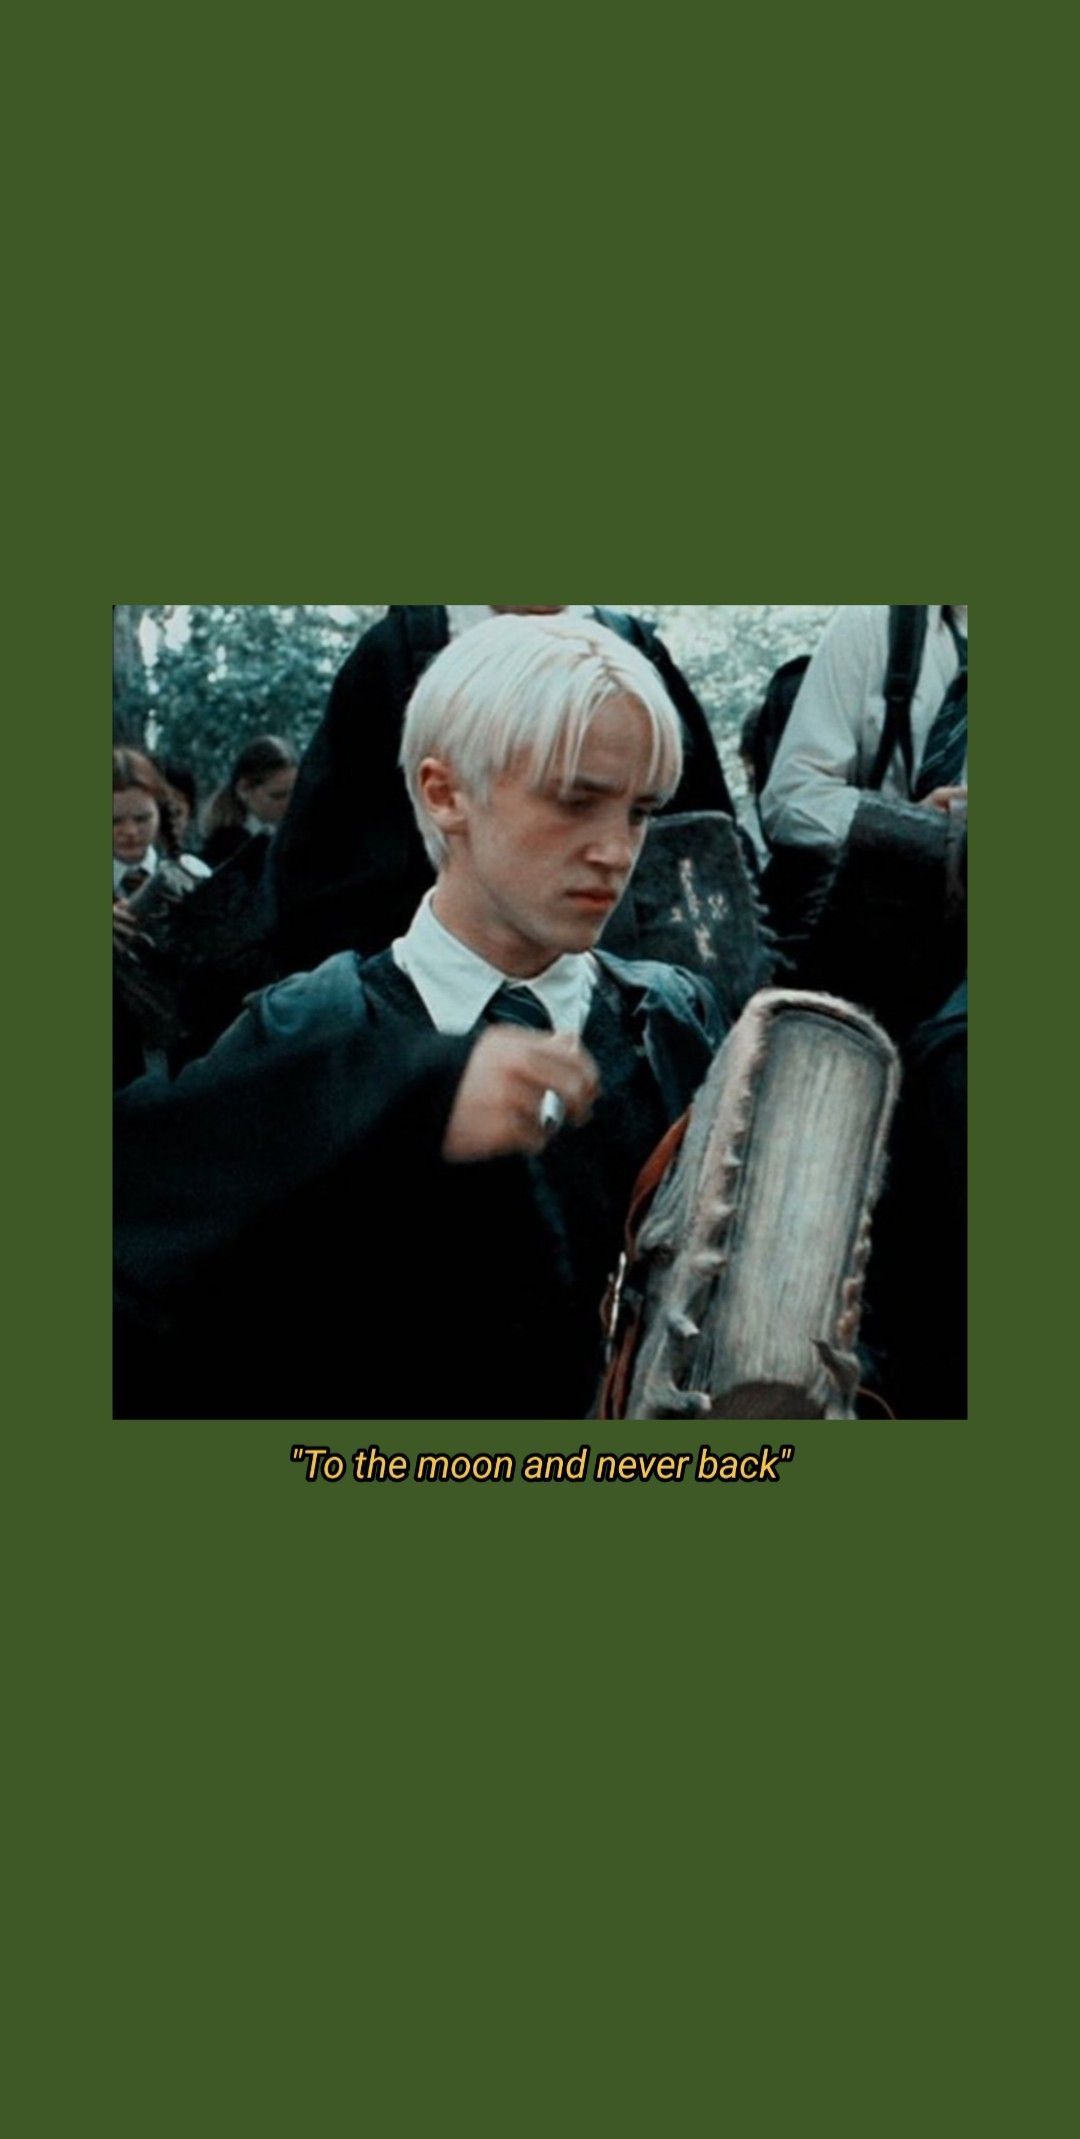 Draco Malfoy aesthetic wallpaper. Draco malfoy aesthetic, Draco malfoy, Draco malfoy quotes